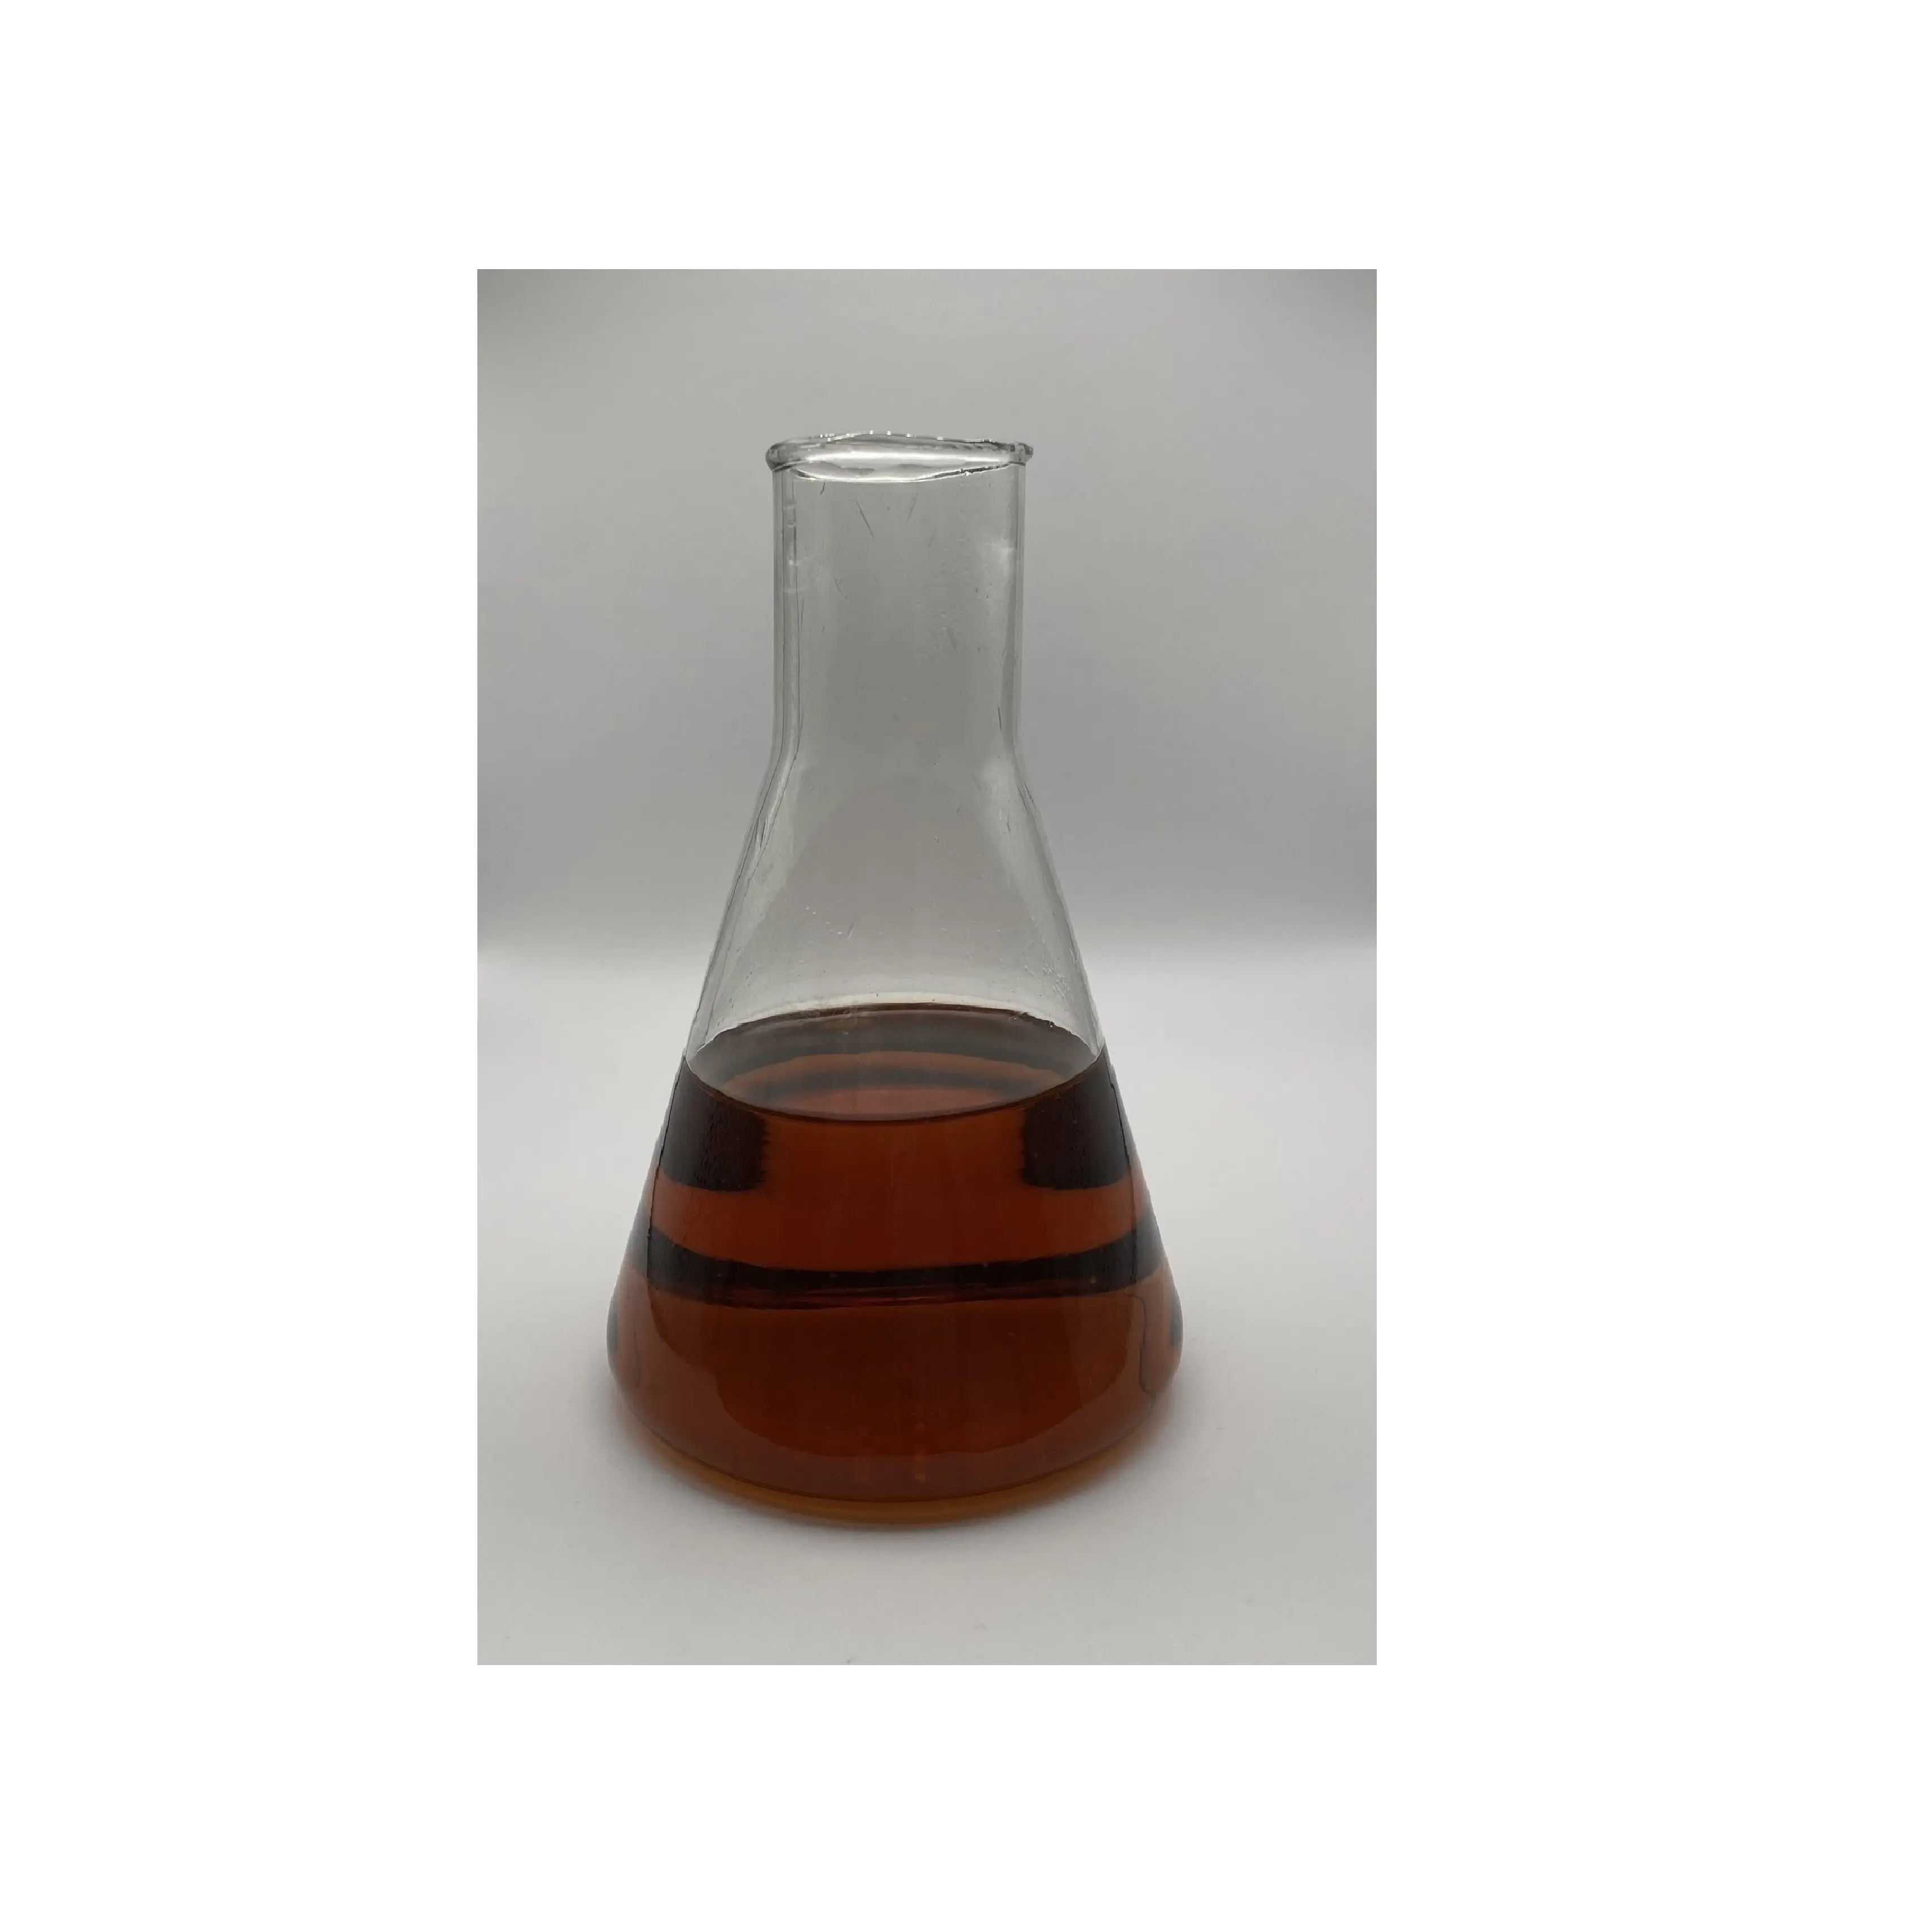 Óleo alto destilado por atacado DTO produto de retificação a vácuo óleo alto para separação de substâncias em processo de flutuação